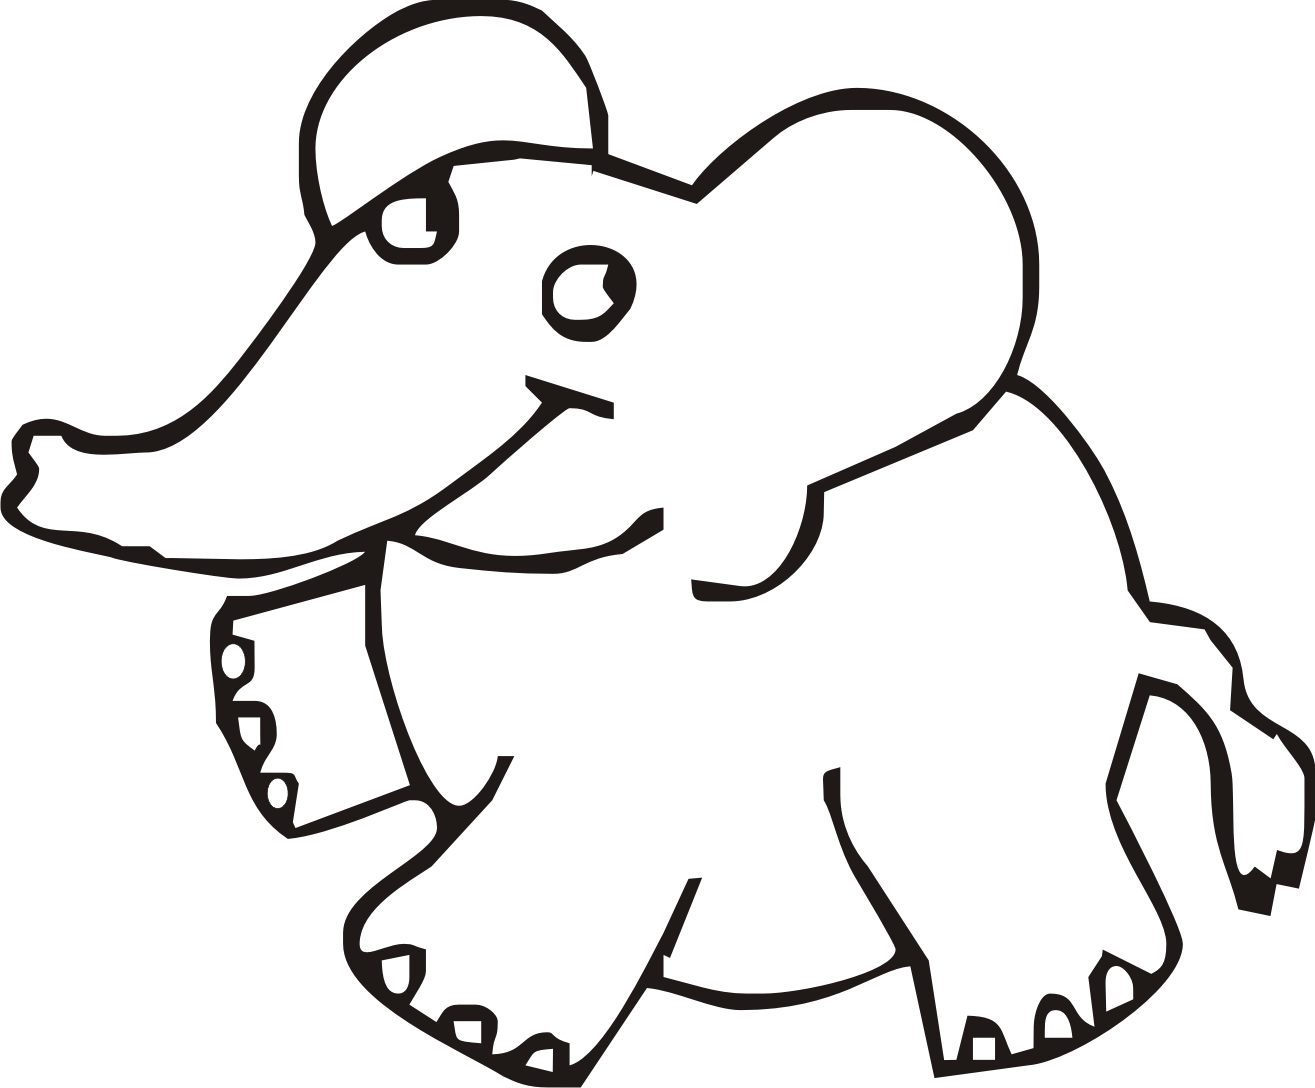 Elefante per bambini disegno da stampare e colorare gratis